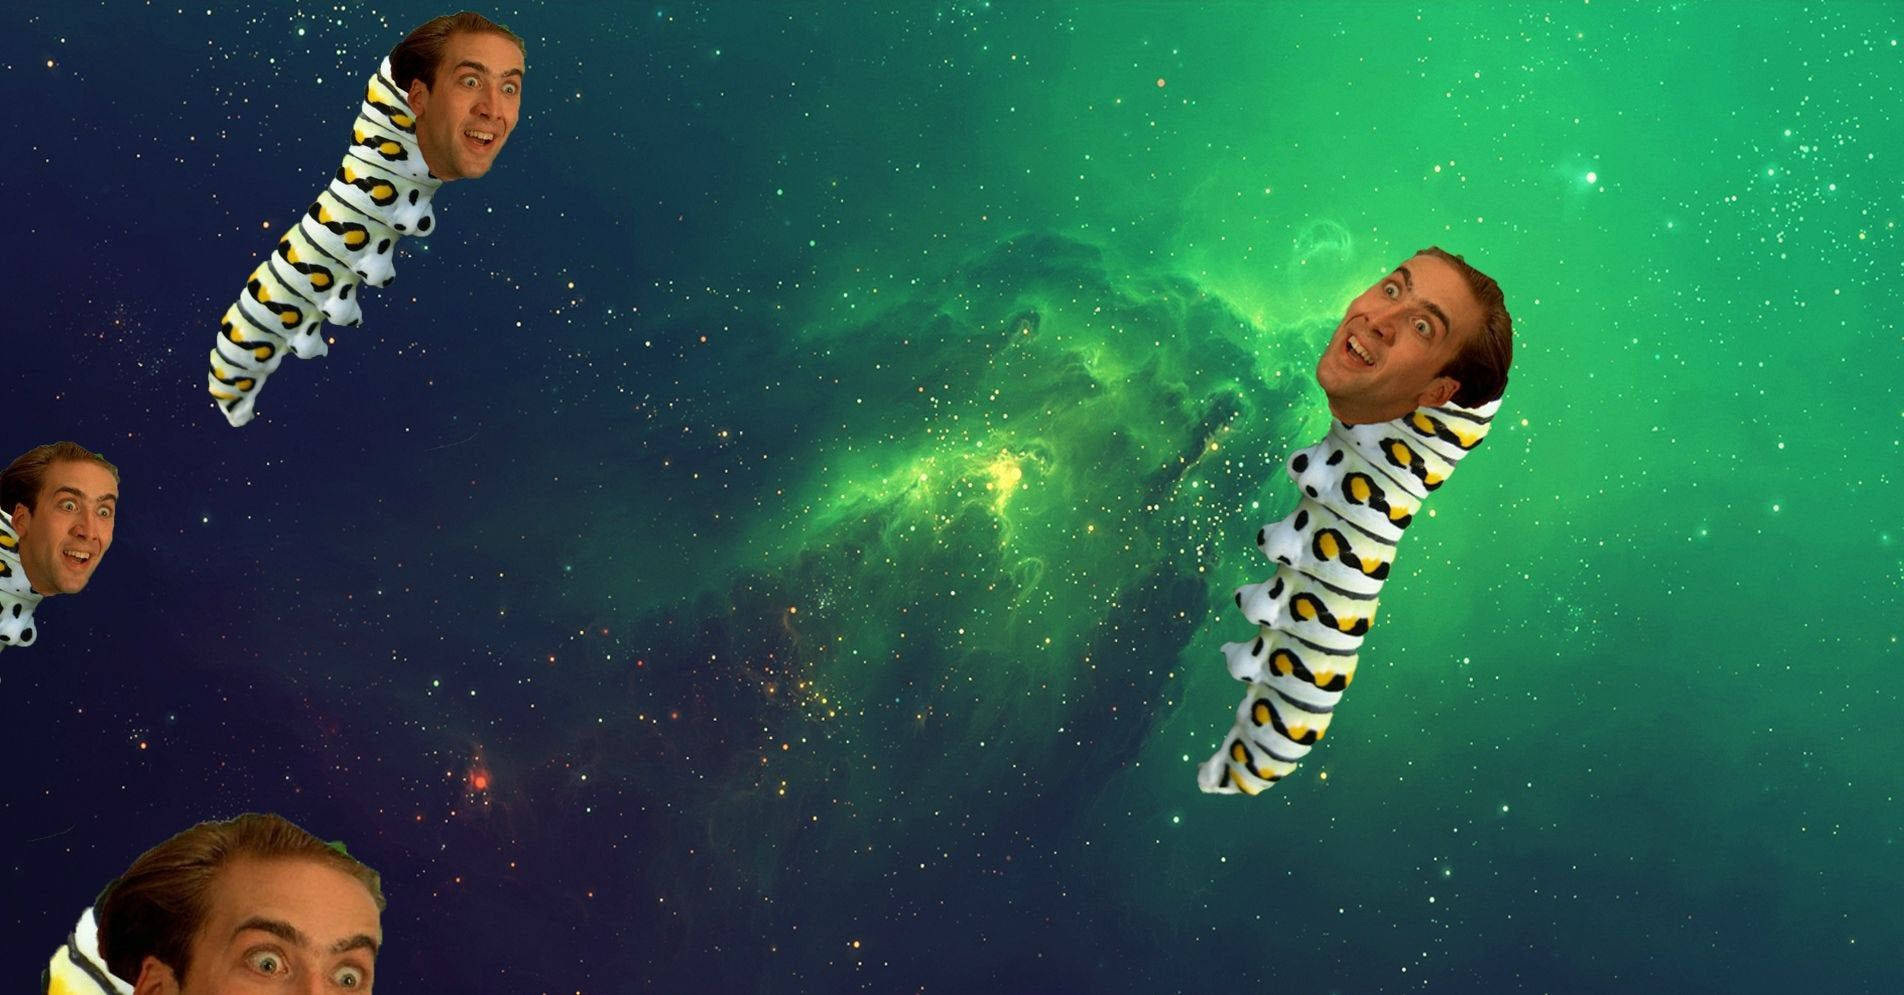 Nicolas Cage Caterpillar Meme Background